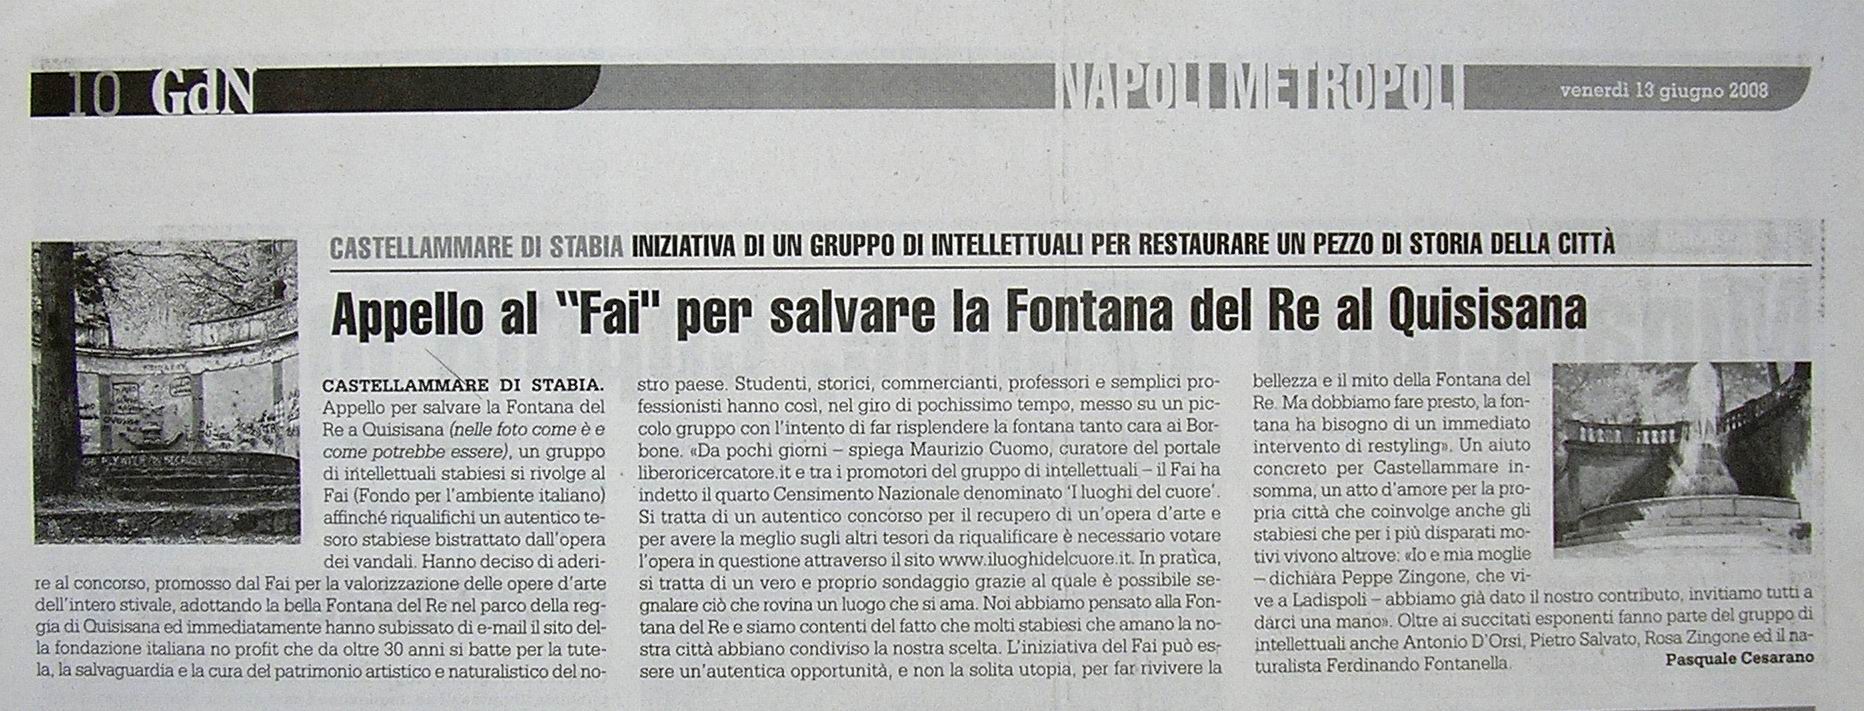 Il Giornale di Napoli – Pasquale Cesarano (13 giugno 2008)